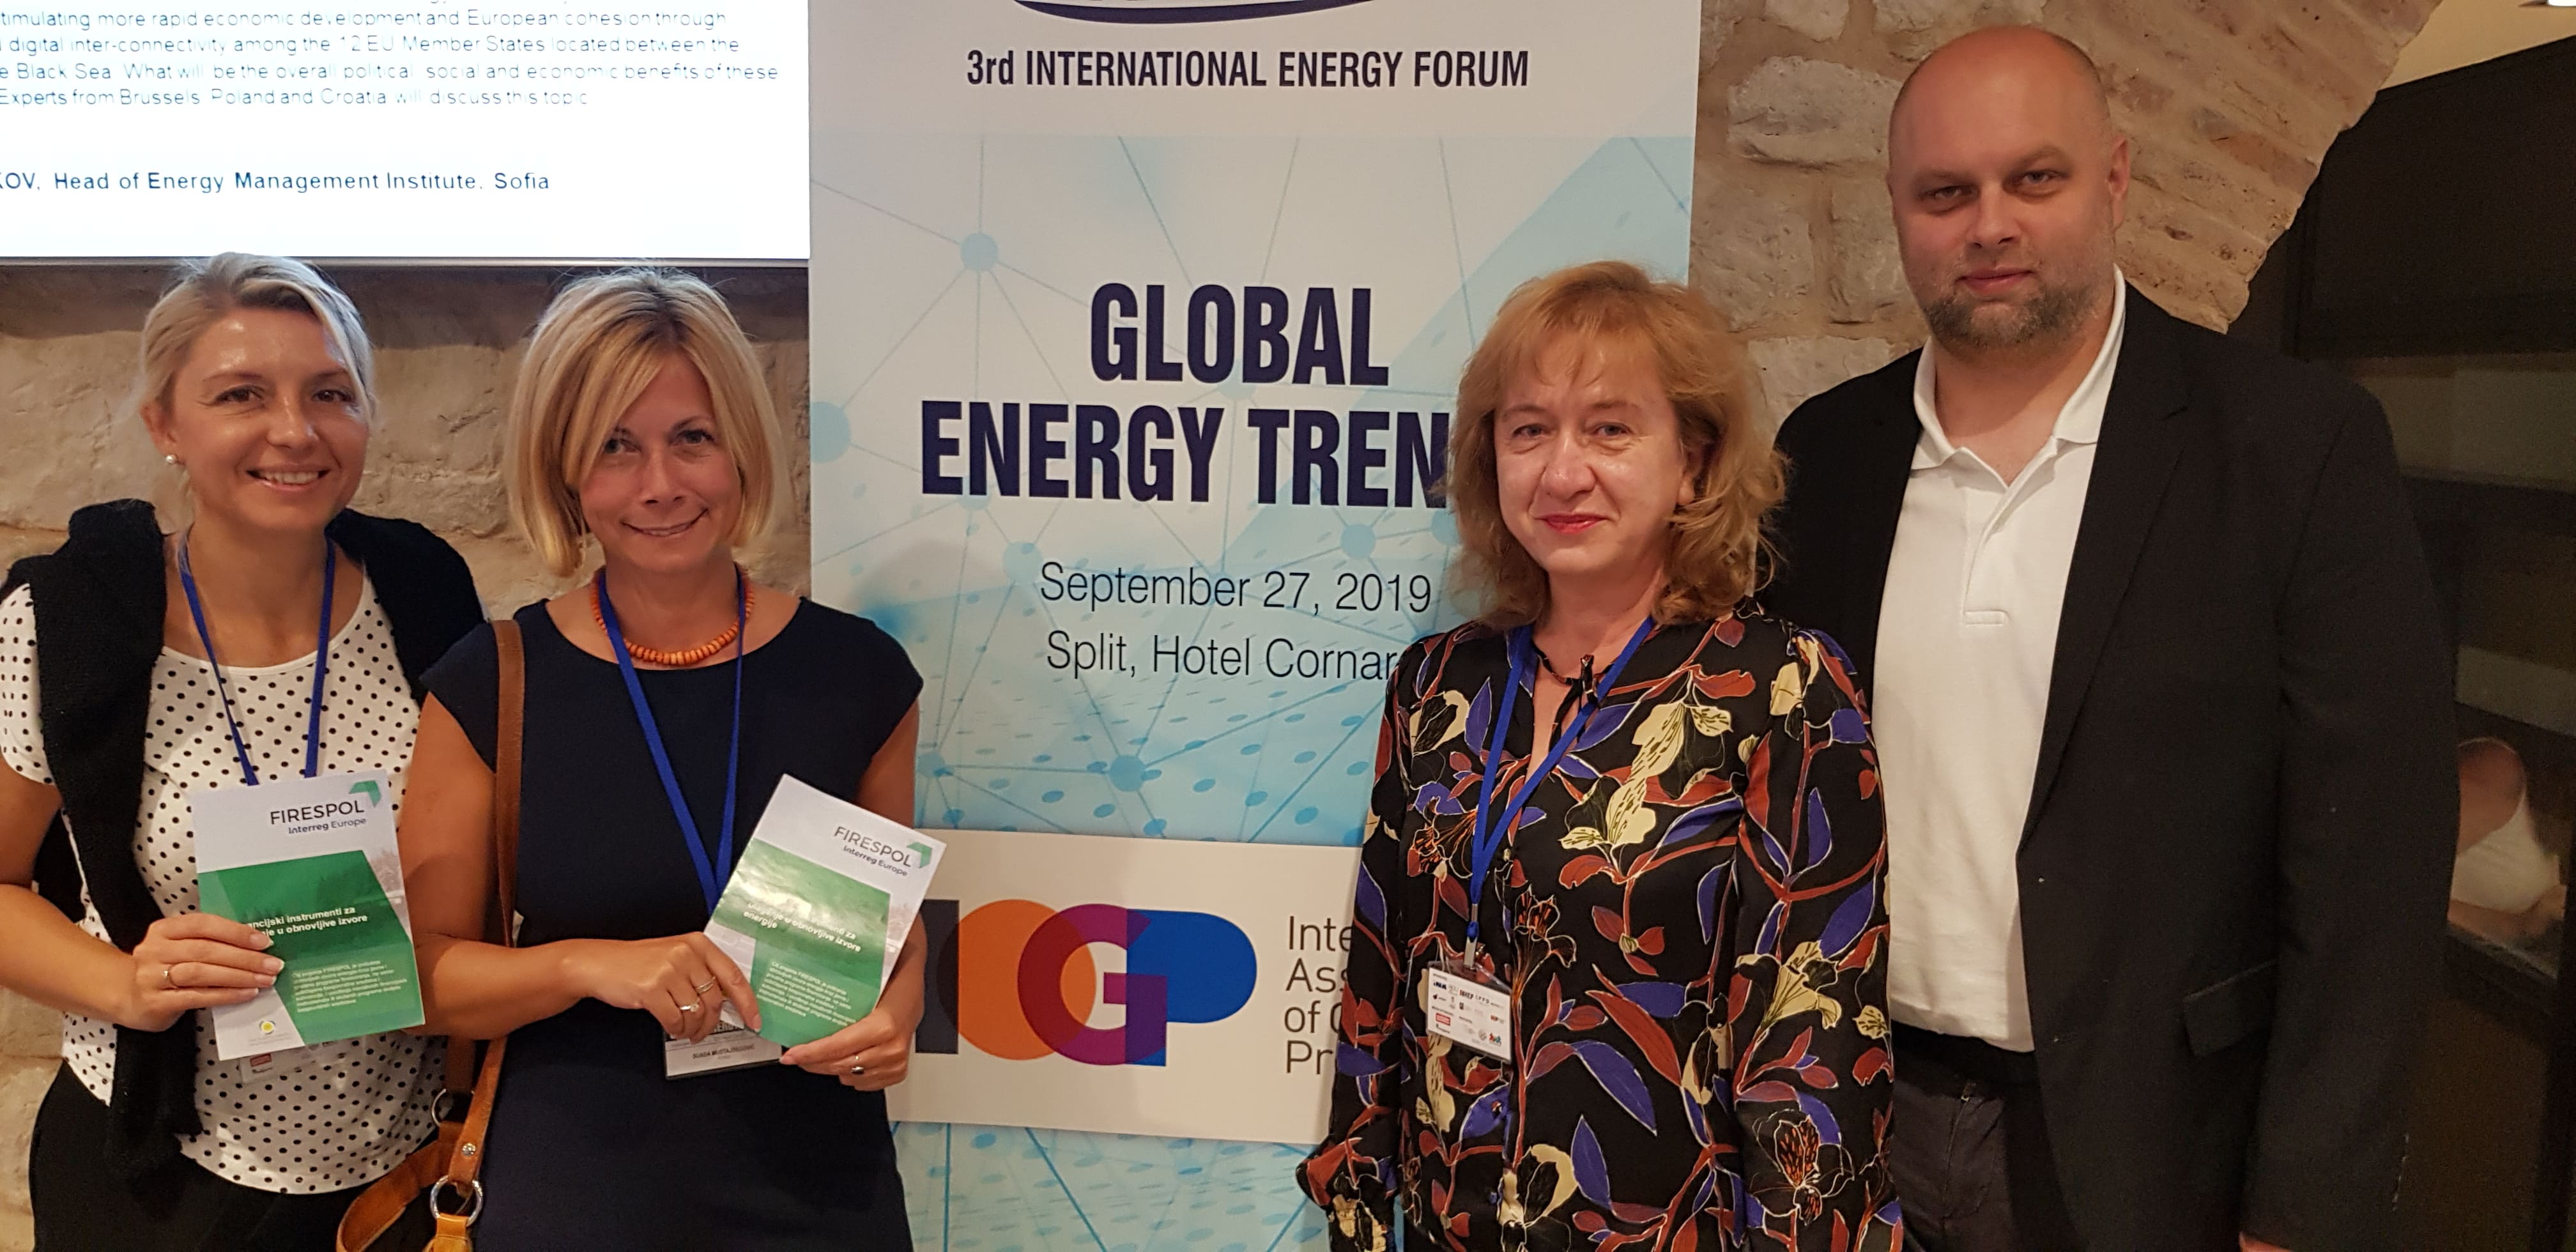 FIRESPOL at Energy Forum in Split 